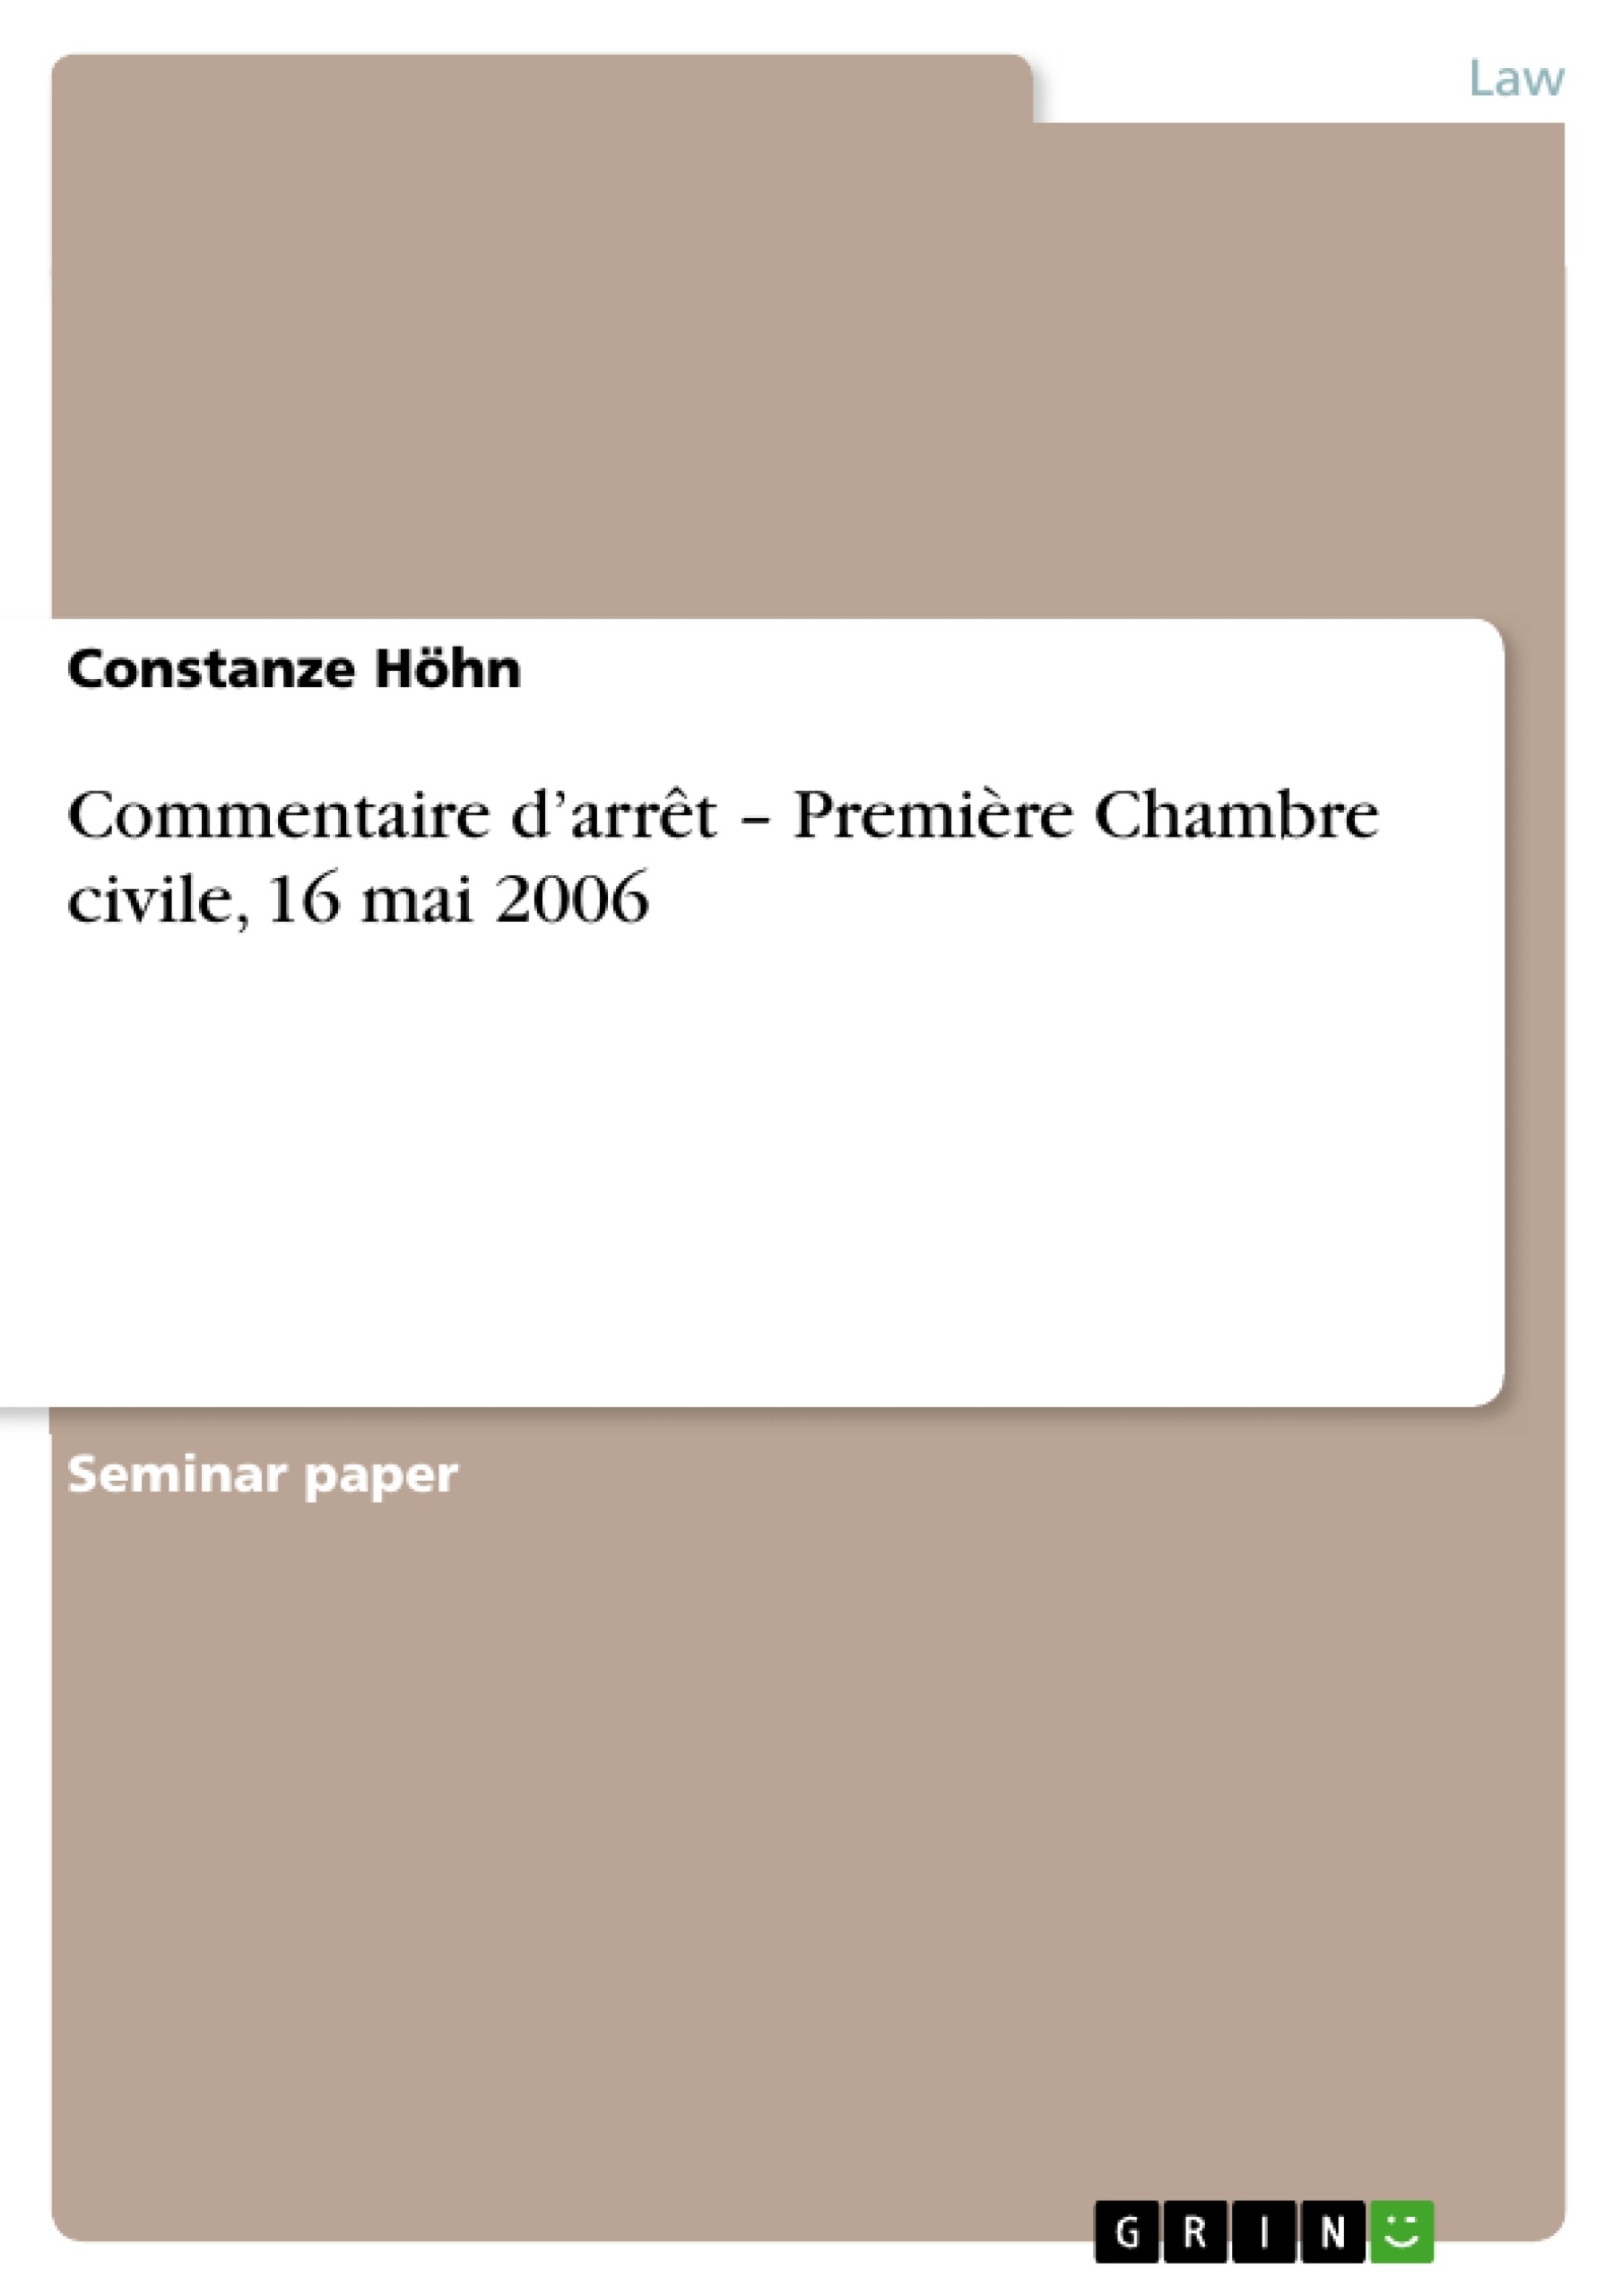 Título: Commentaire d’arrêt – Première Chambre civile, 16 mai 2006